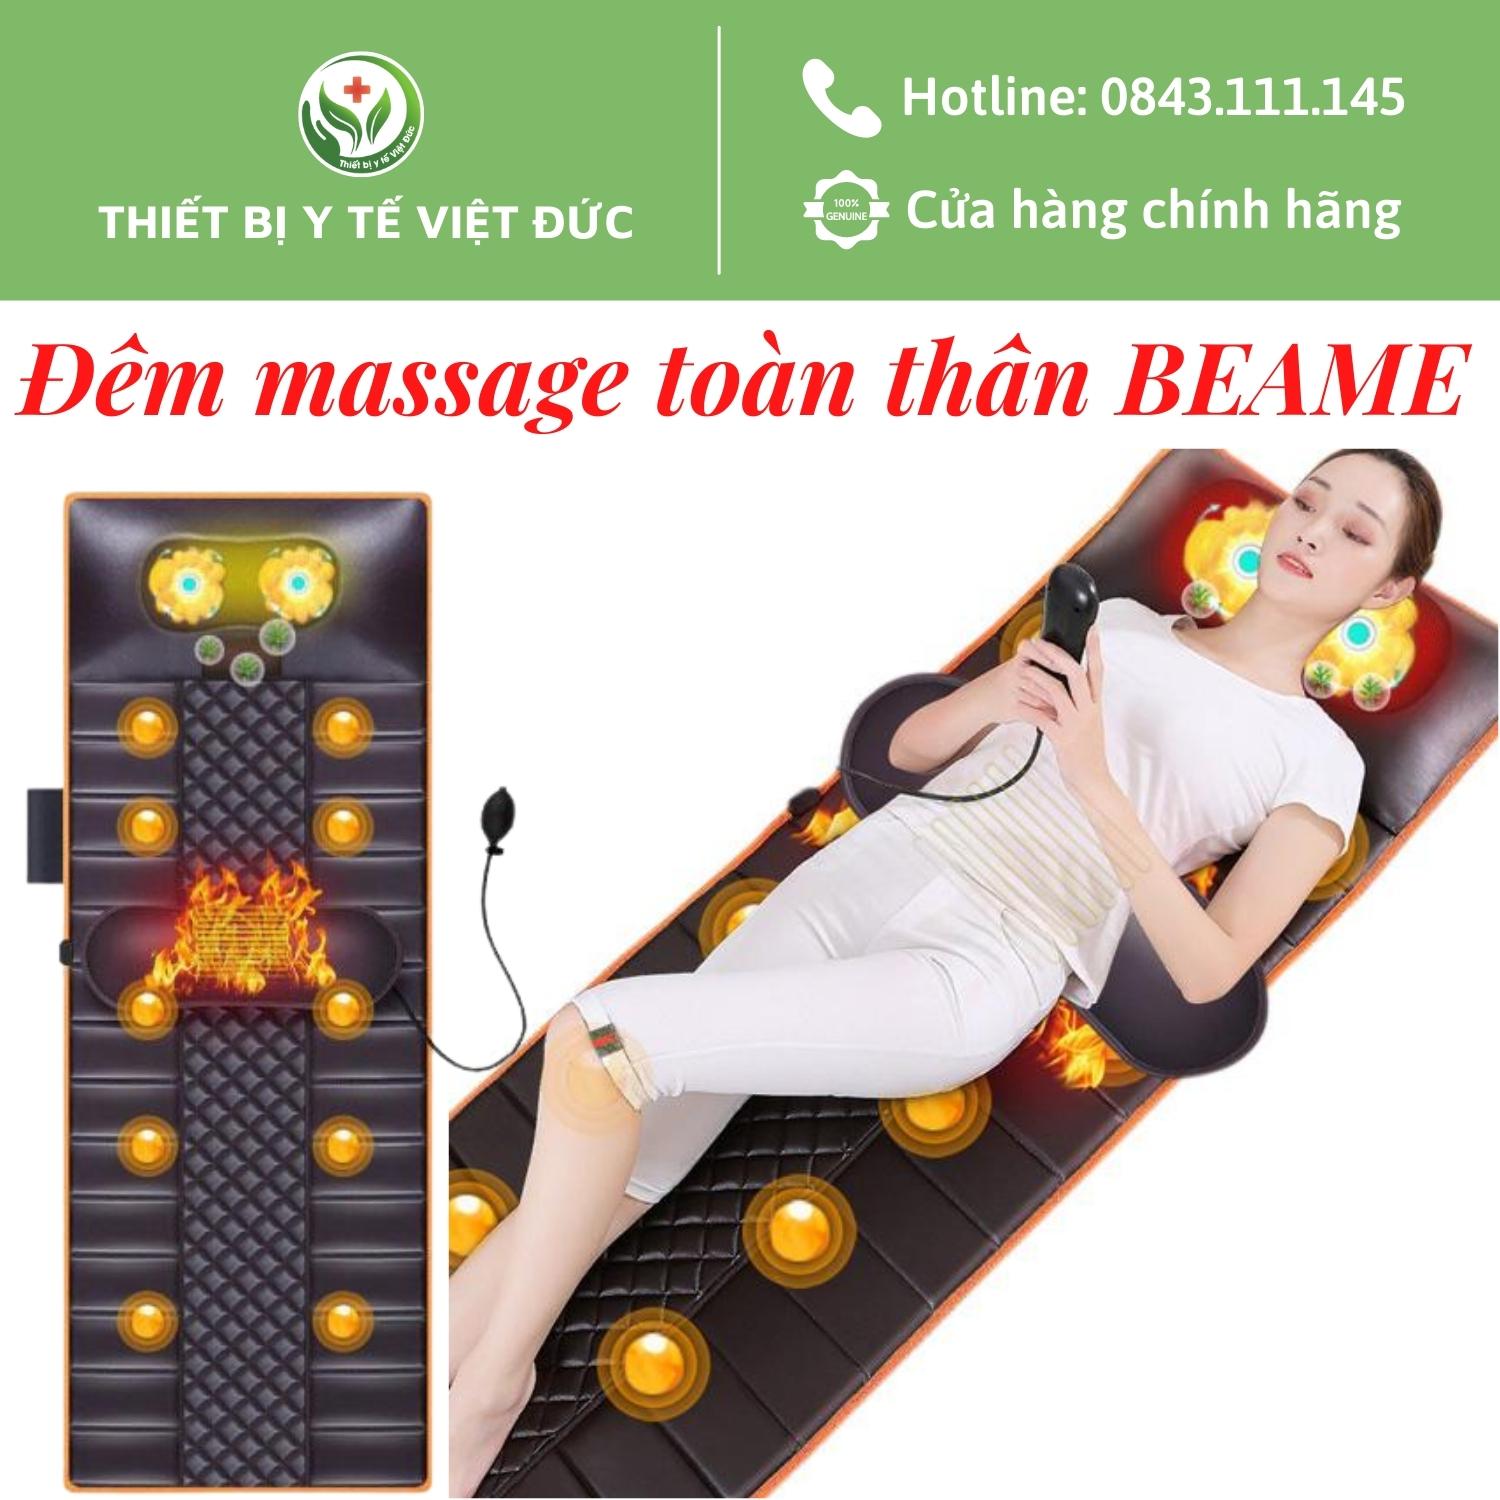 Nệm Massage Toàn Thân, Đệm Mát Xa Toàn Thân Hồng Ngoại BEAME Cao Cấp Với 20 Con Lăn 4D Massage Vùng Cổ Vai Gáy Làm Dịu Vị Trí Đau Nhức  Kết Hợp 10 Động Cơ Rung Massage Toàn Thân